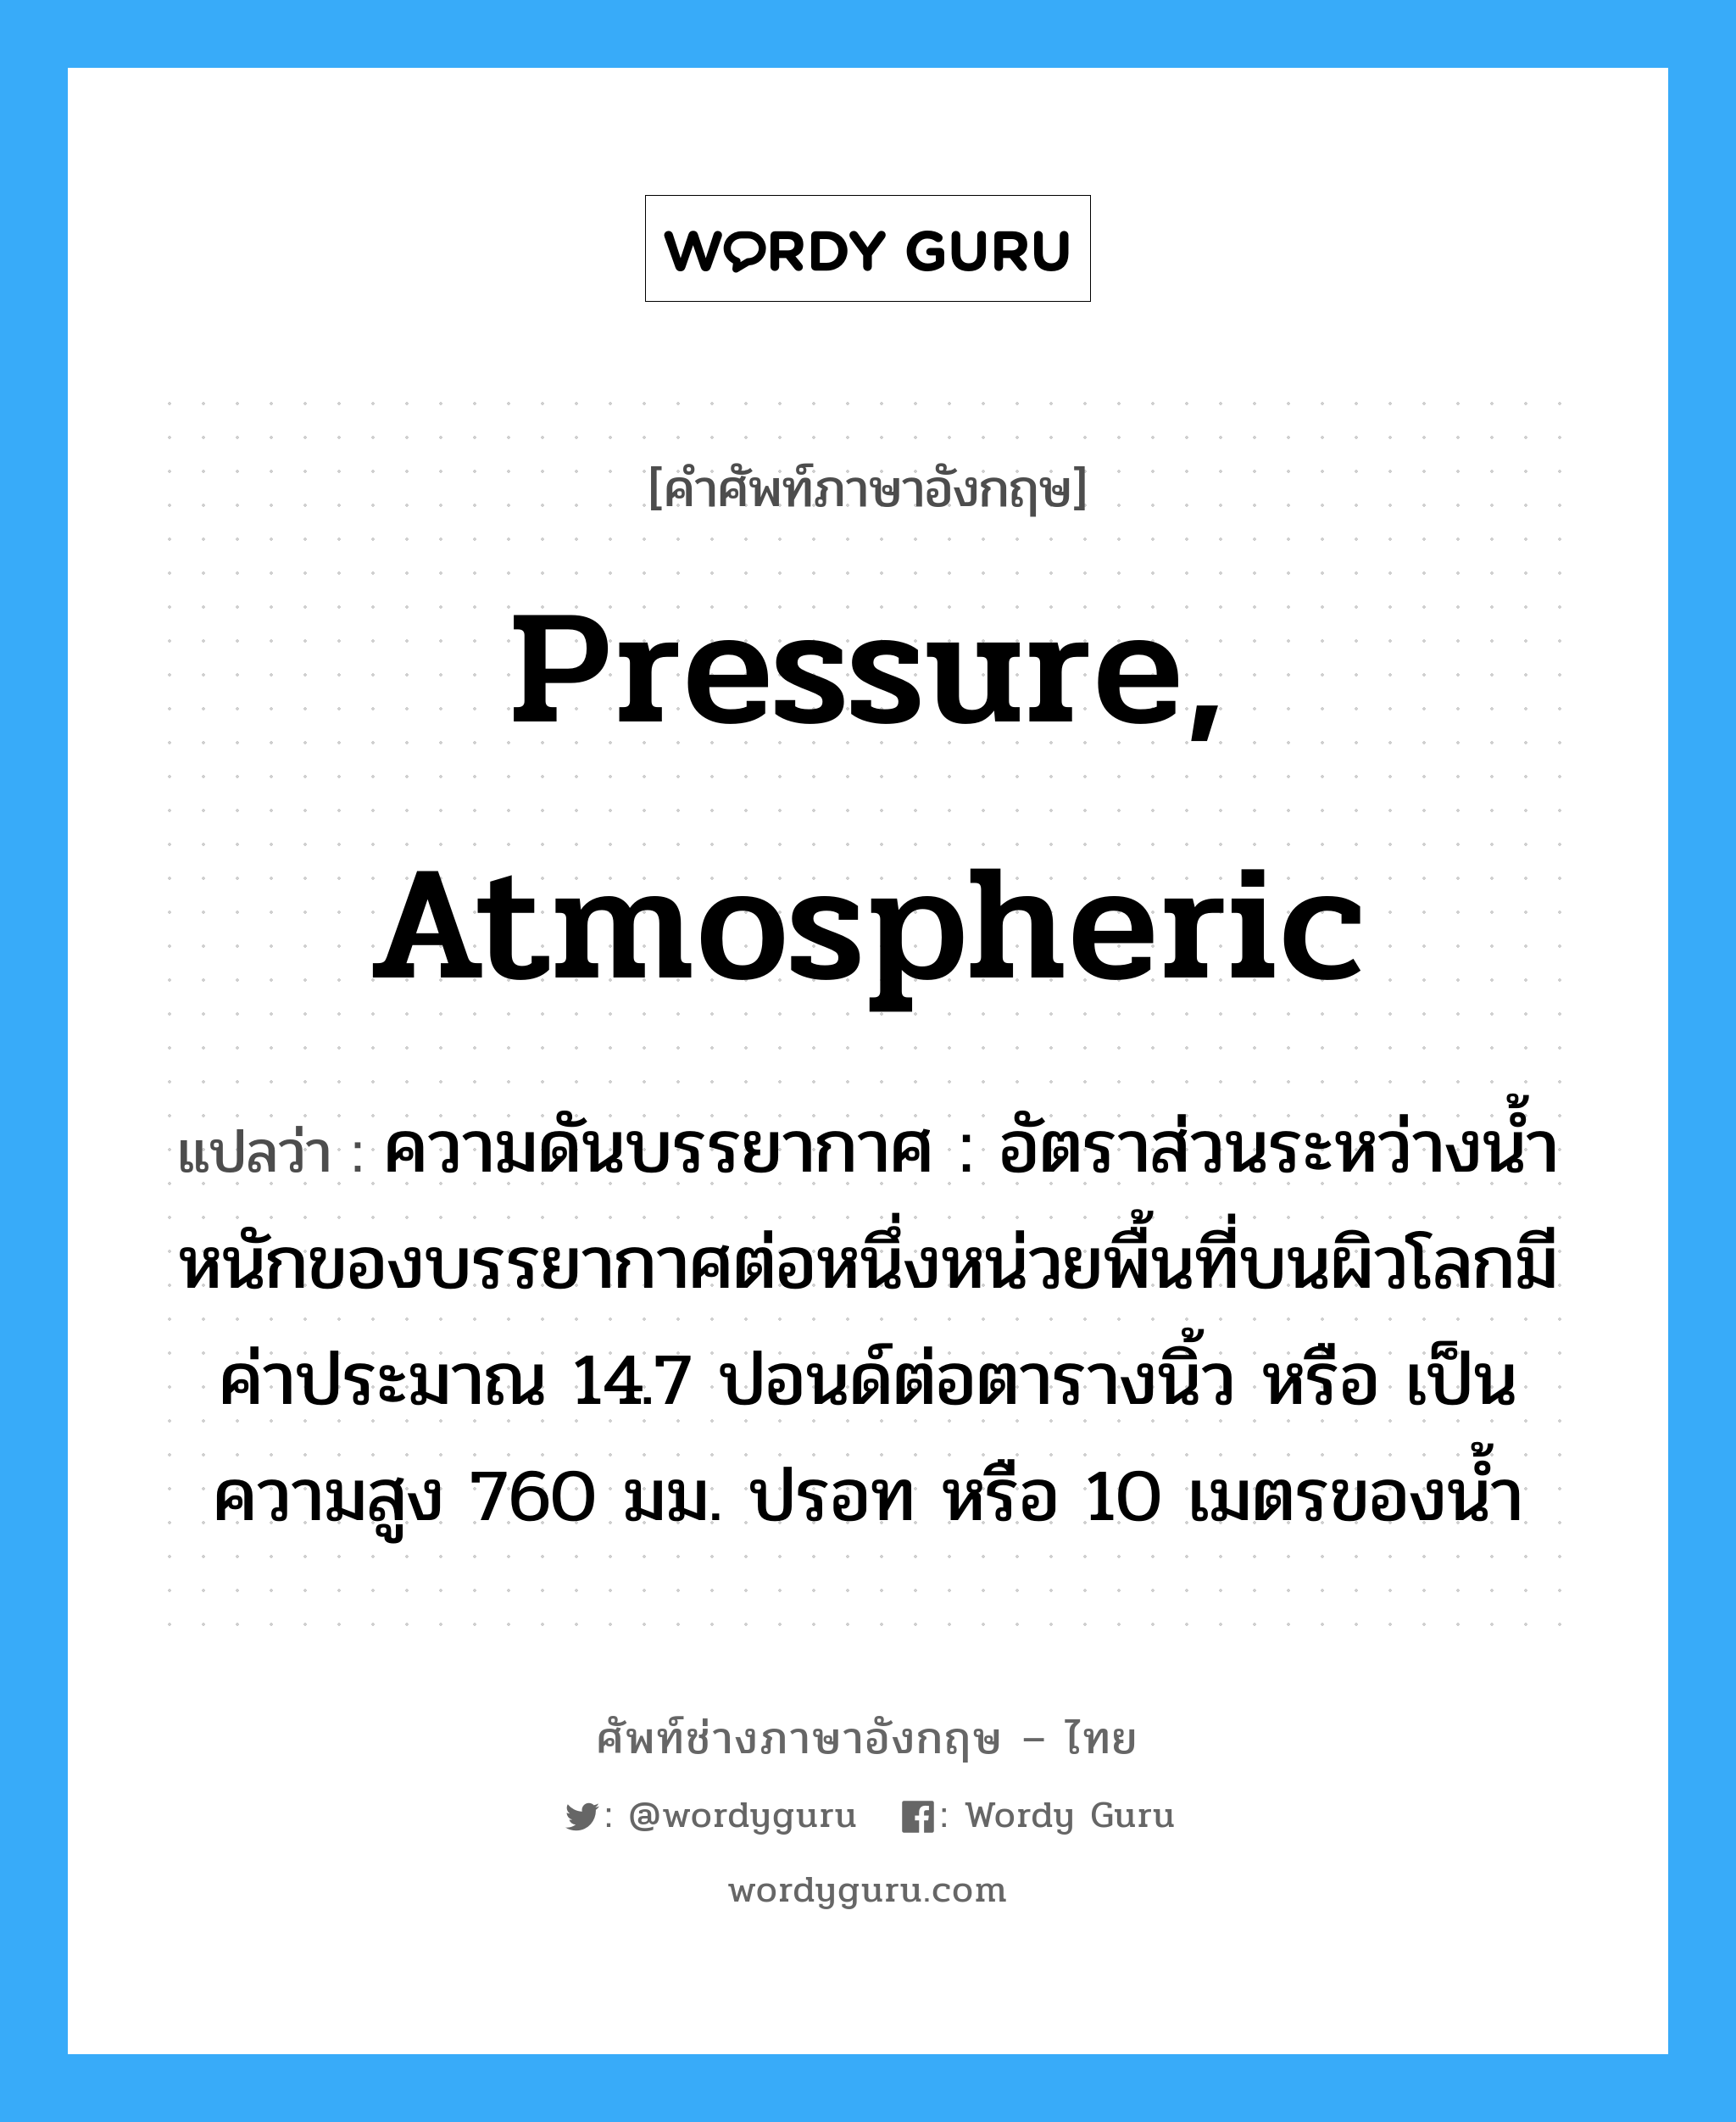 pressure, atmospheric แปลว่า?, คำศัพท์ช่างภาษาอังกฤษ - ไทย pressure, atmospheric คำศัพท์ภาษาอังกฤษ pressure, atmospheric แปลว่า ความดันบรรยากาศ : อัตราส่วนระหว่างน้ำหนักของบรรยากาศต่อหนึ่งหน่วยพื้นที่บนผิวโลกมีค่าประมาณ 14.7 ปอนด์ต่อตารางนิ้ว หรือ เป็นความสูง 760 มม. ปรอท หรือ 10 เมตรของน้ำ